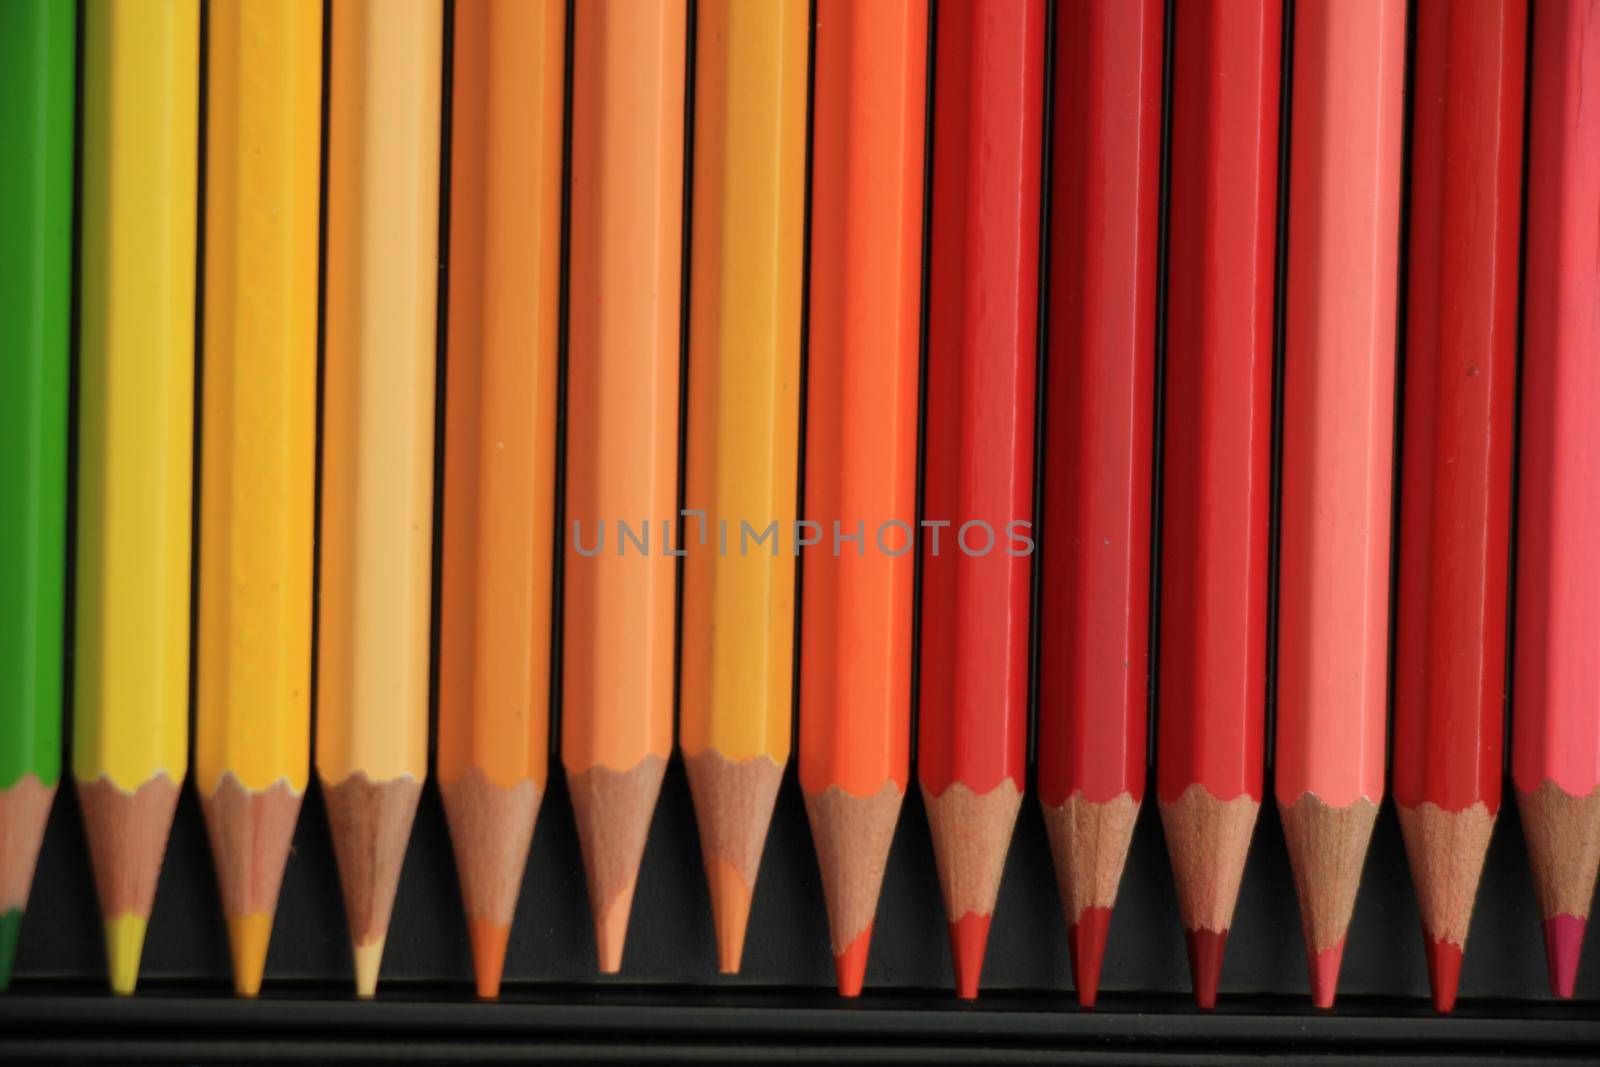 Brand new unused color pencils in box by studioportosabbia